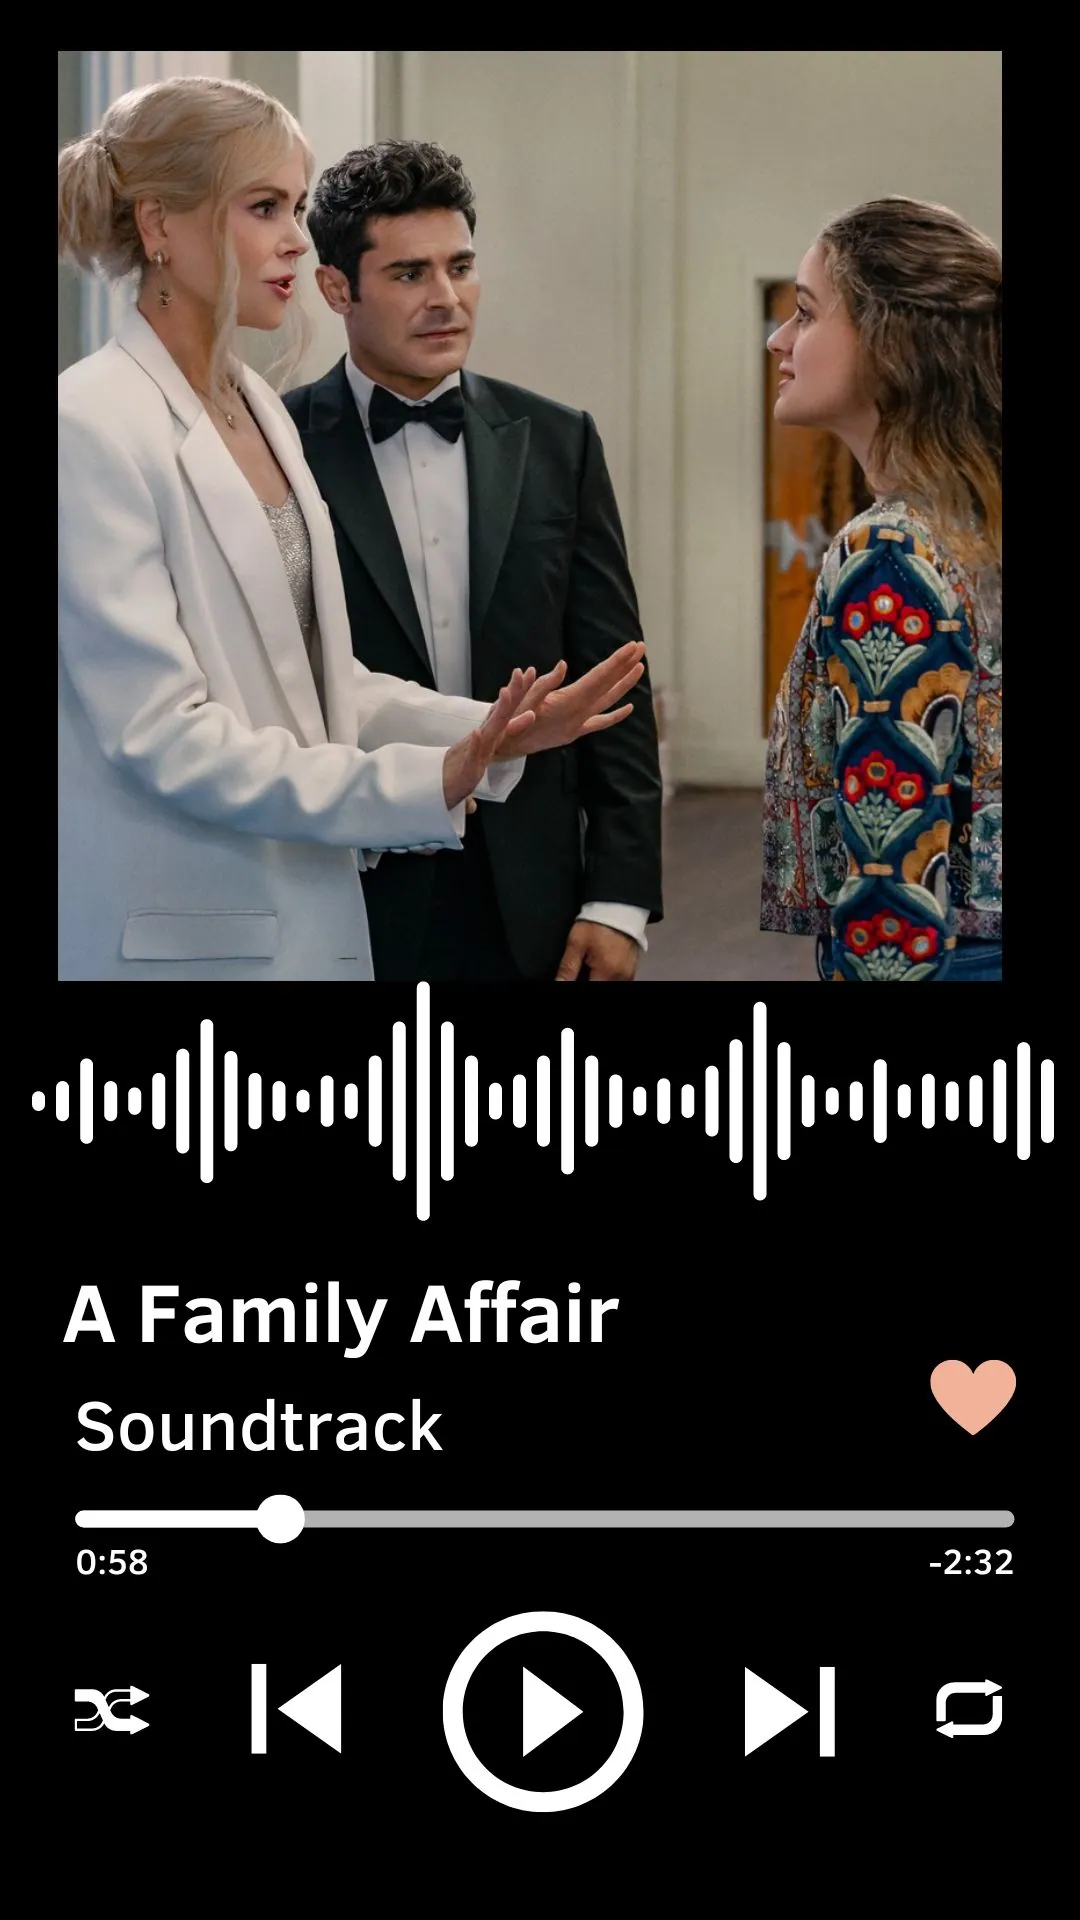 A Family Affair Soundtrack